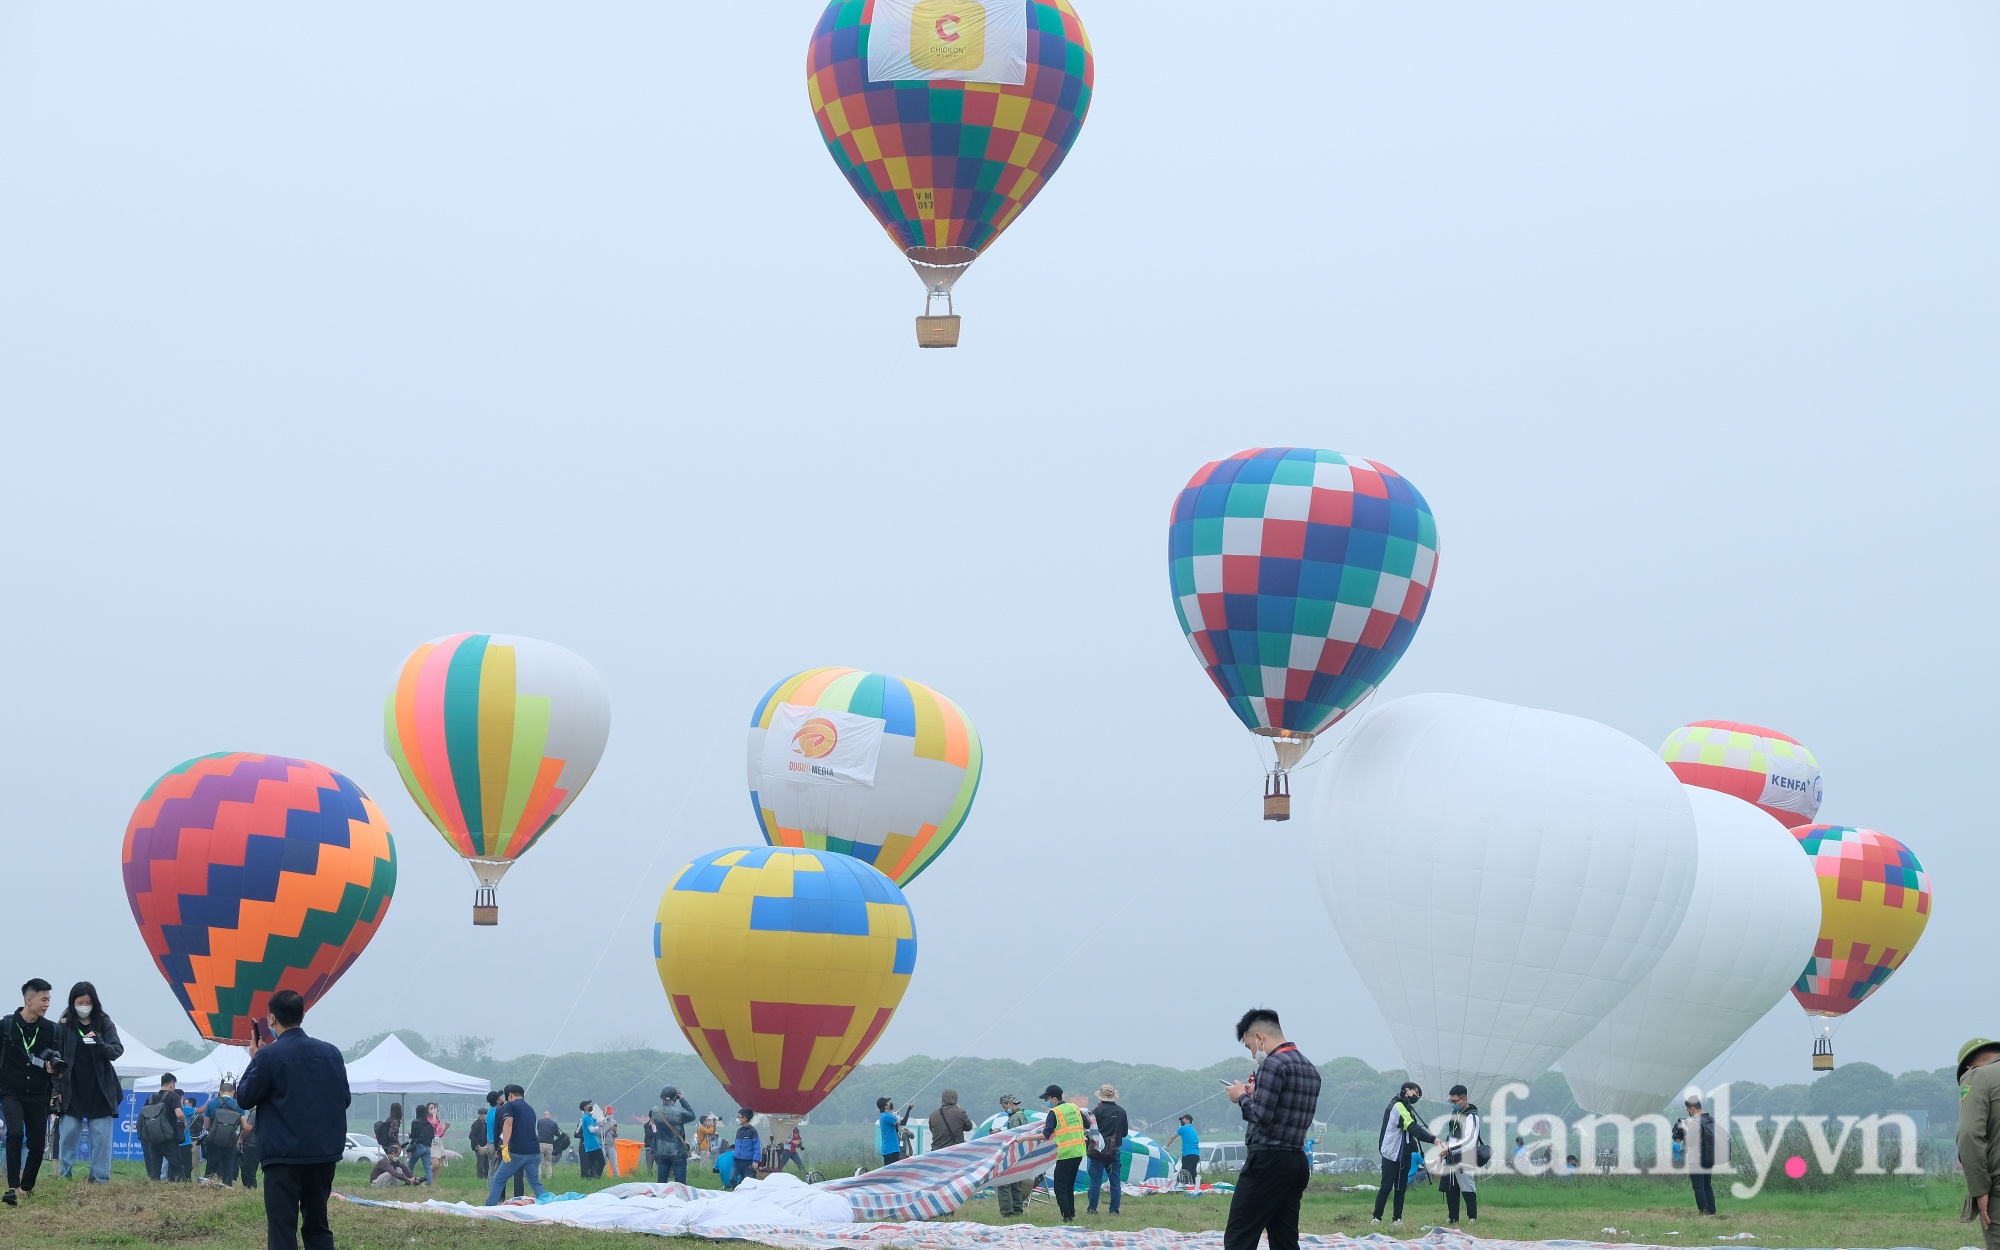 Lần đầu tiên tổ chức Ngày hội khinh khí cầu tại Hà Nội: Nhanh chân đến để trải nghiệm khoảnh khắc hiếm có ngắm thành phố từ trên cao - Ảnh 1.